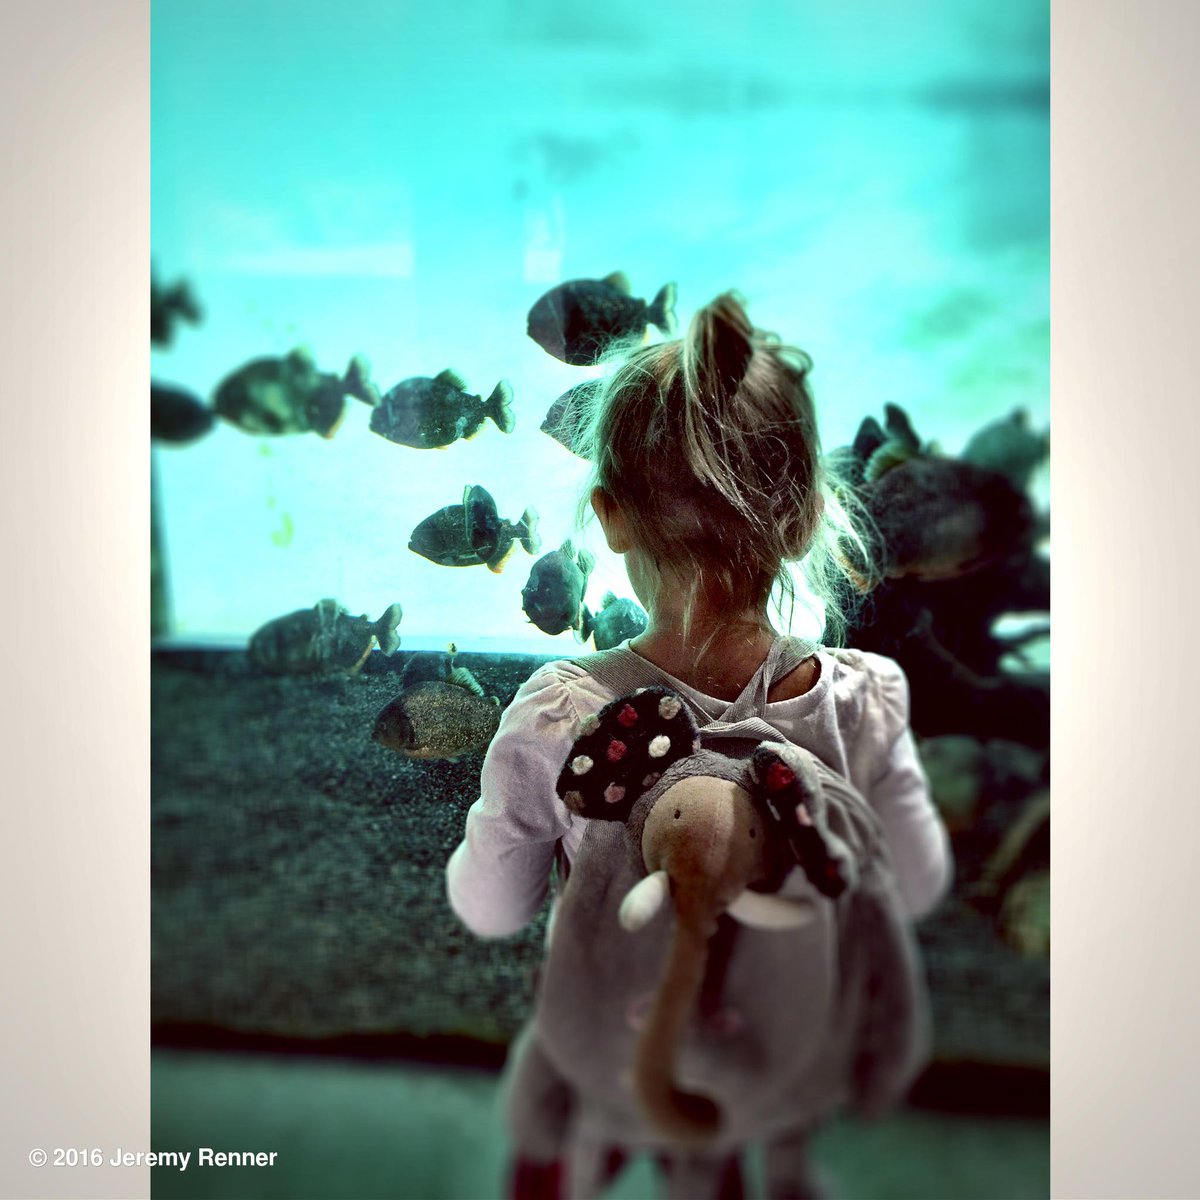 Everyday is an adventure! #zoo #aquarium #lovetolearn https://t.co/W4WtnkrloZ